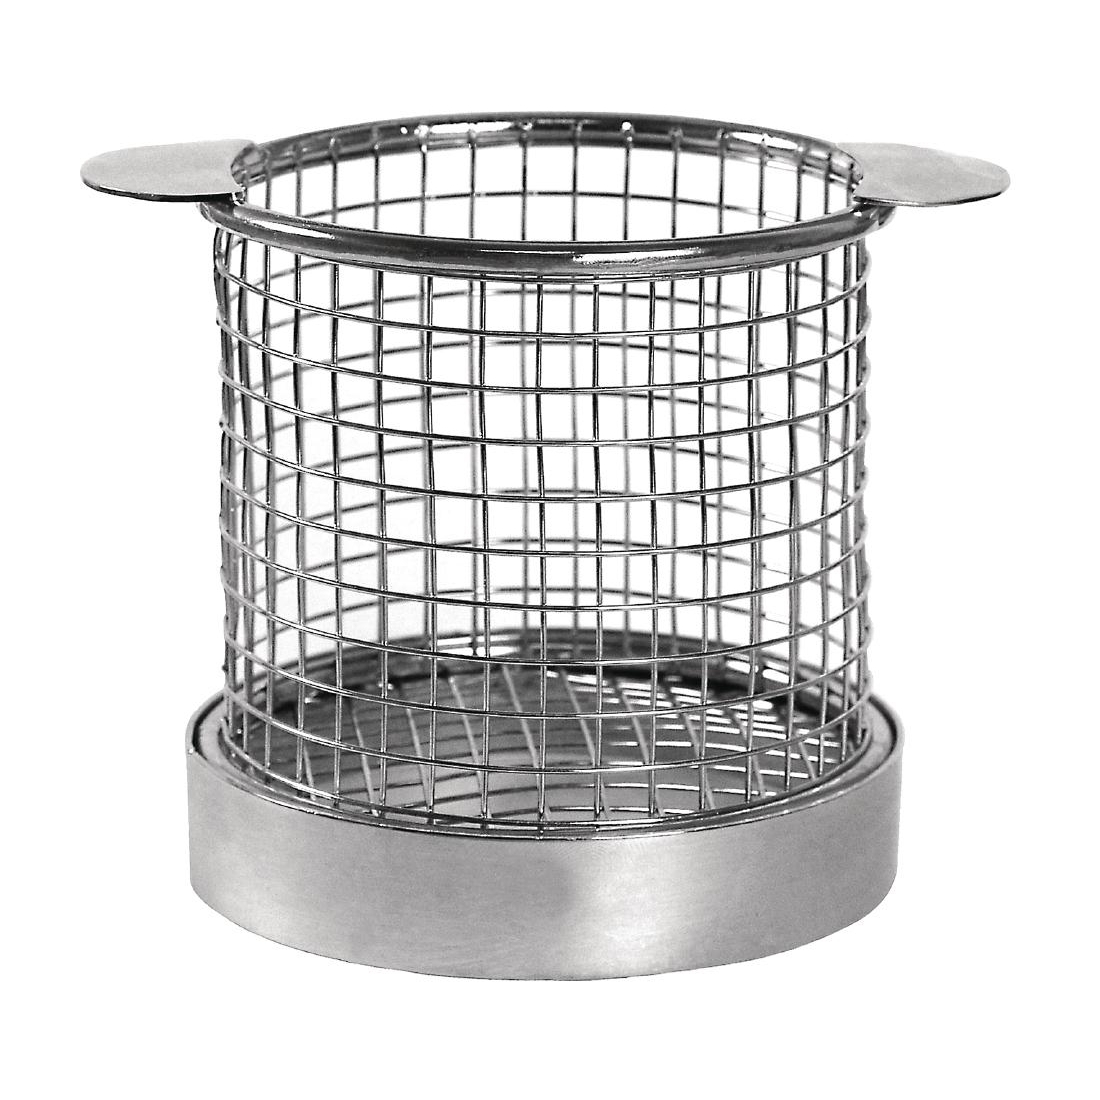 Polypropylene Proving Basket - 1.5kg - Round - Polypropylene